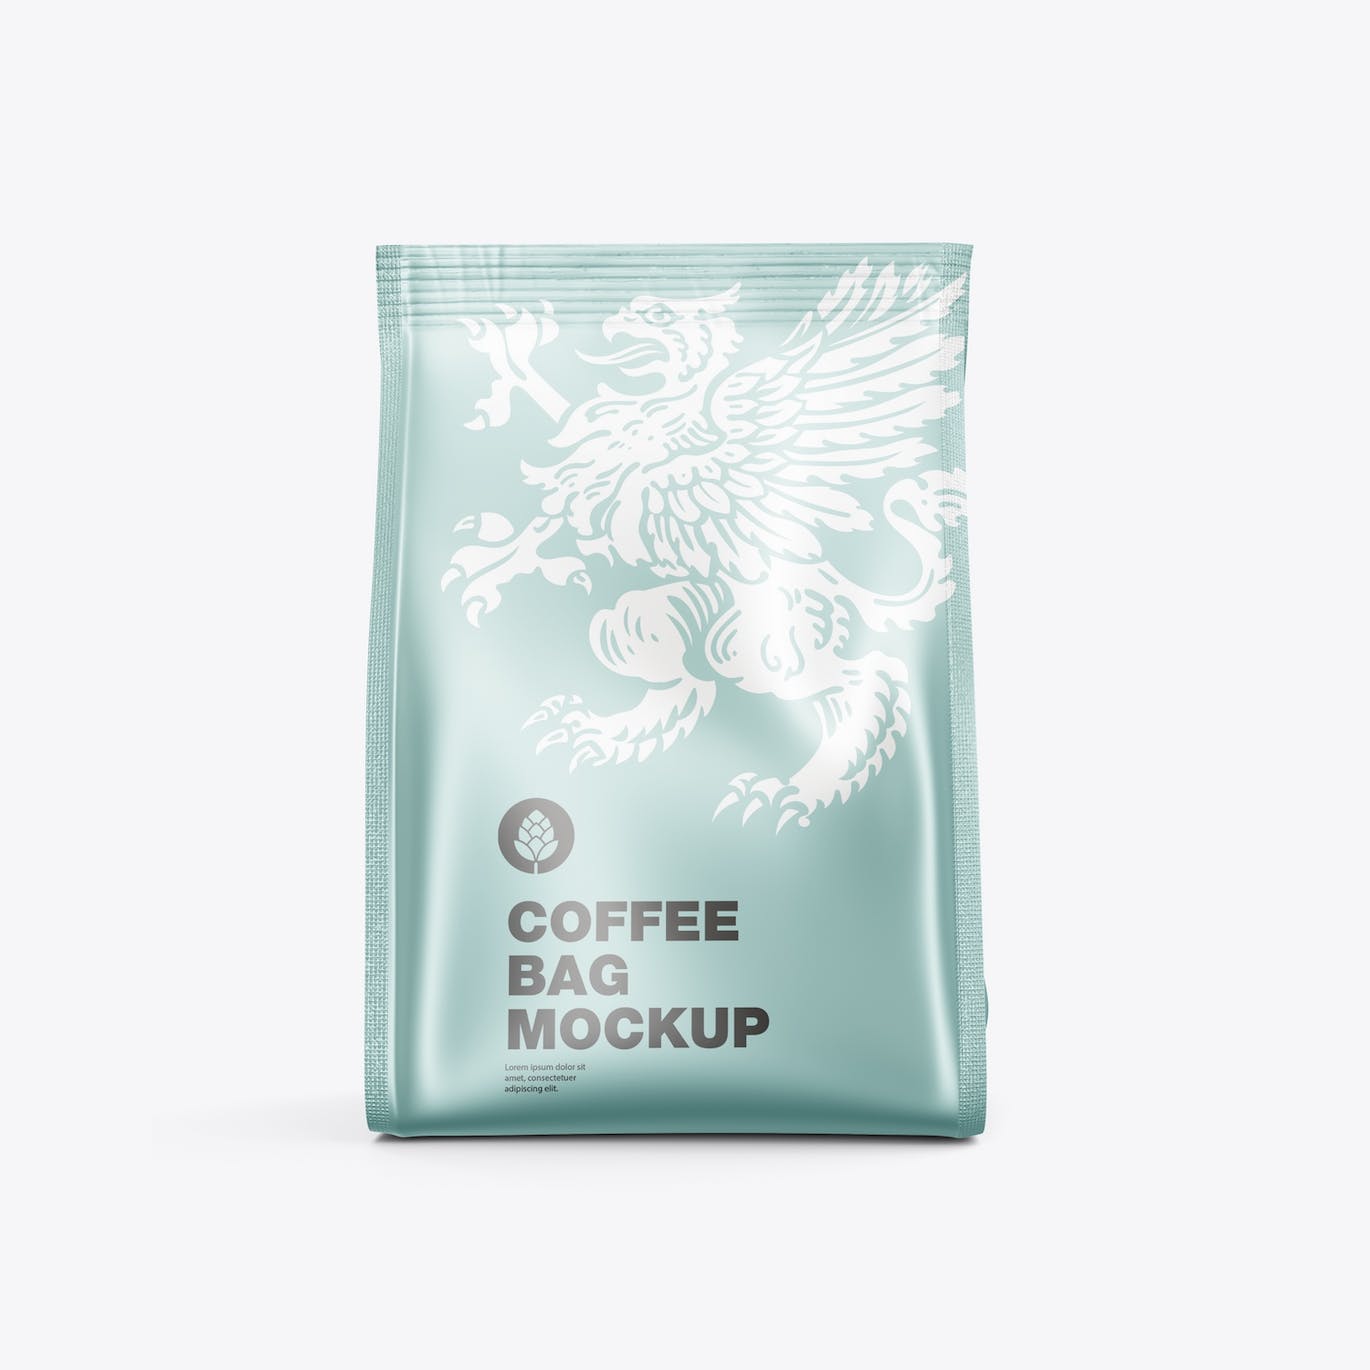 金属纸咖啡袋包装样机图 Pack Metallic Paper Coffee Bag Mockup 样机素材 第6张